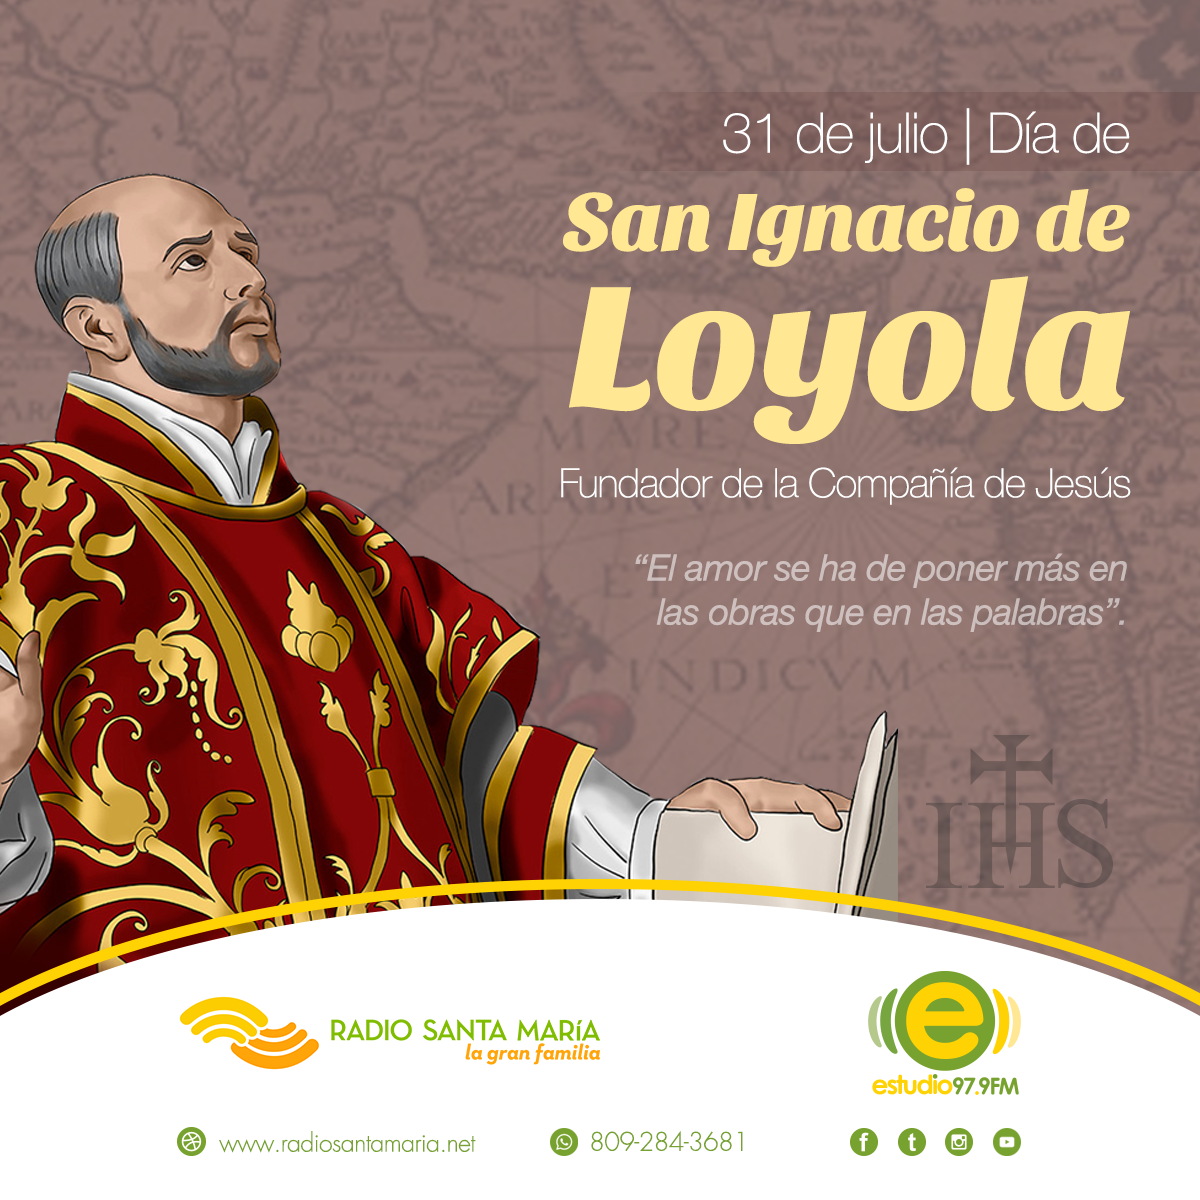 Santoral del 31 de julio: día de San Ignacio de Loyola, creador de la Orden  de los Jesuitas